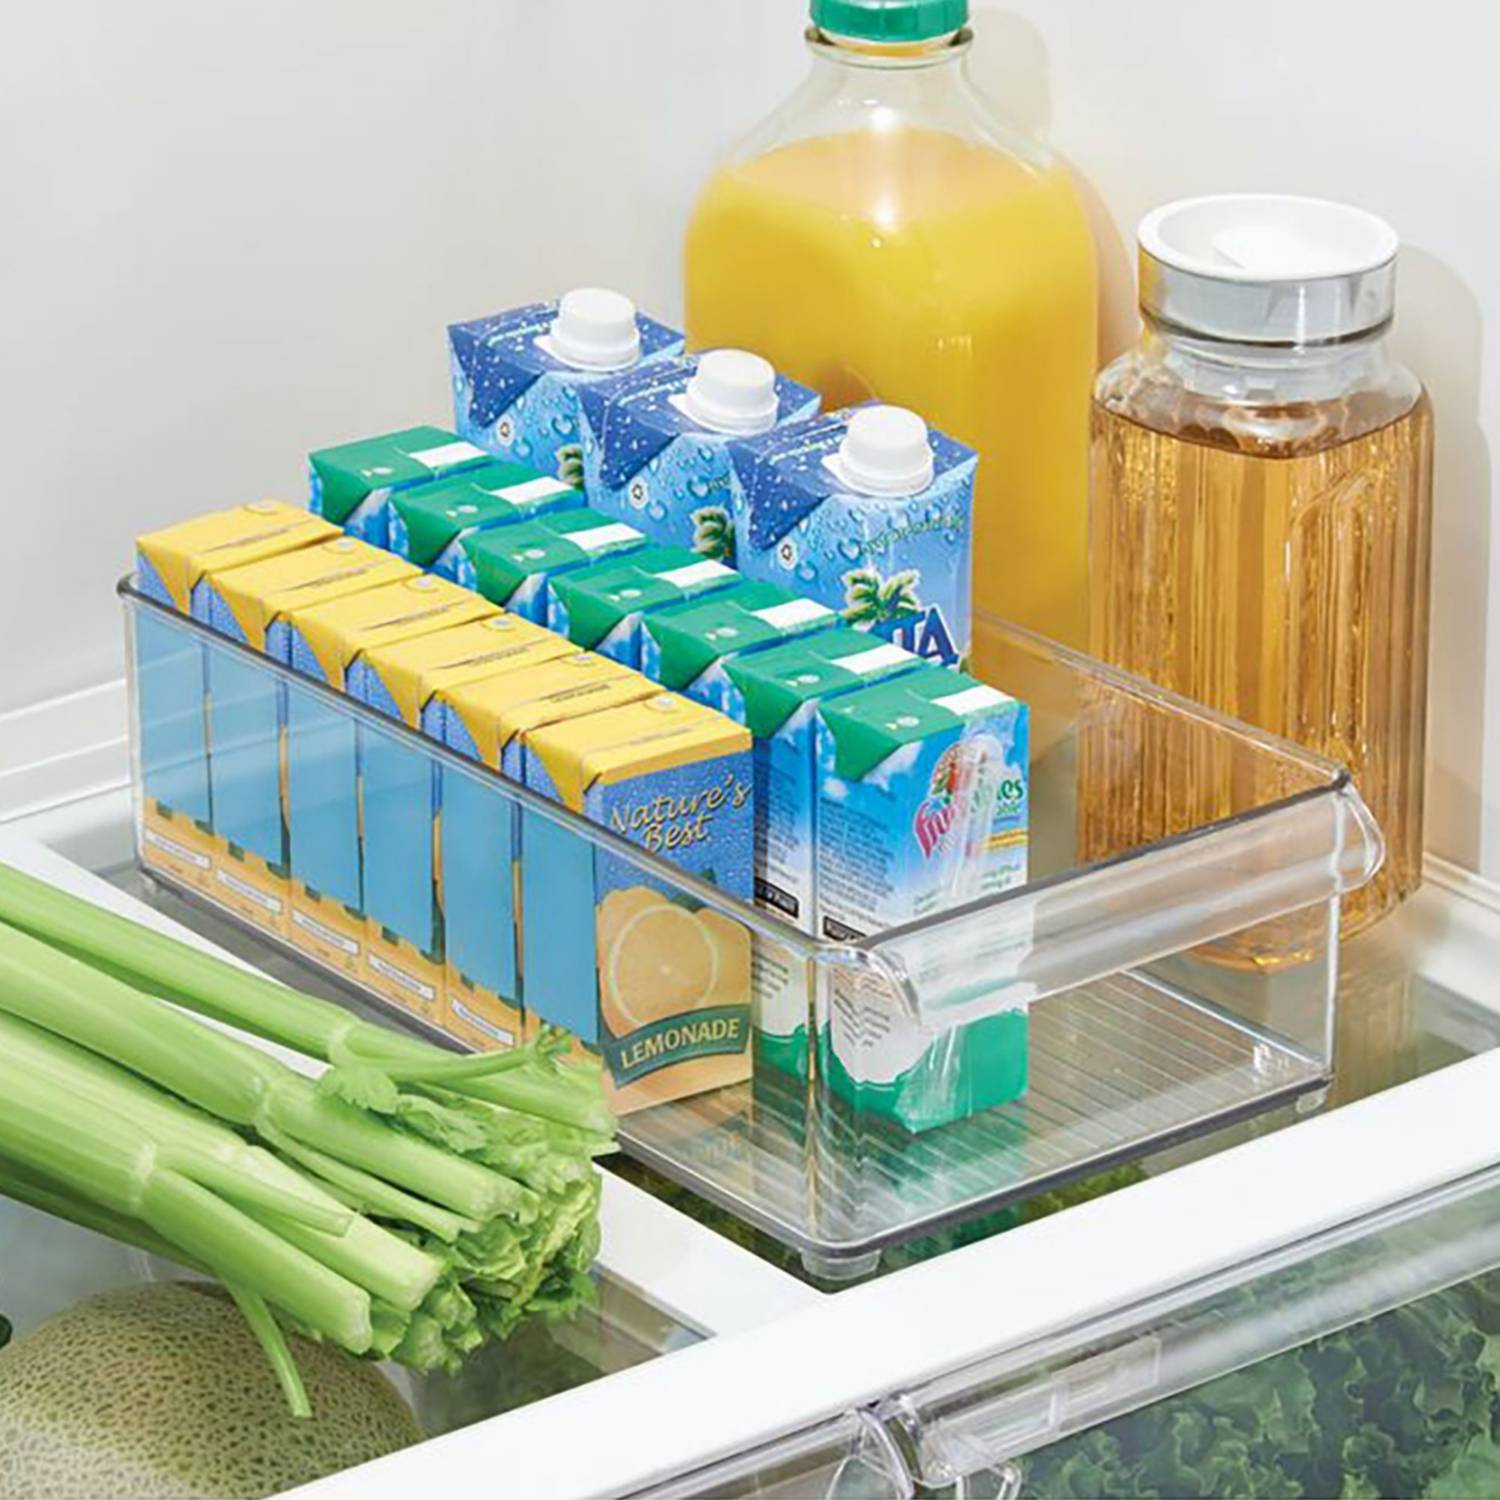 Cajas organizadoras para refrigerador – Home store mexico